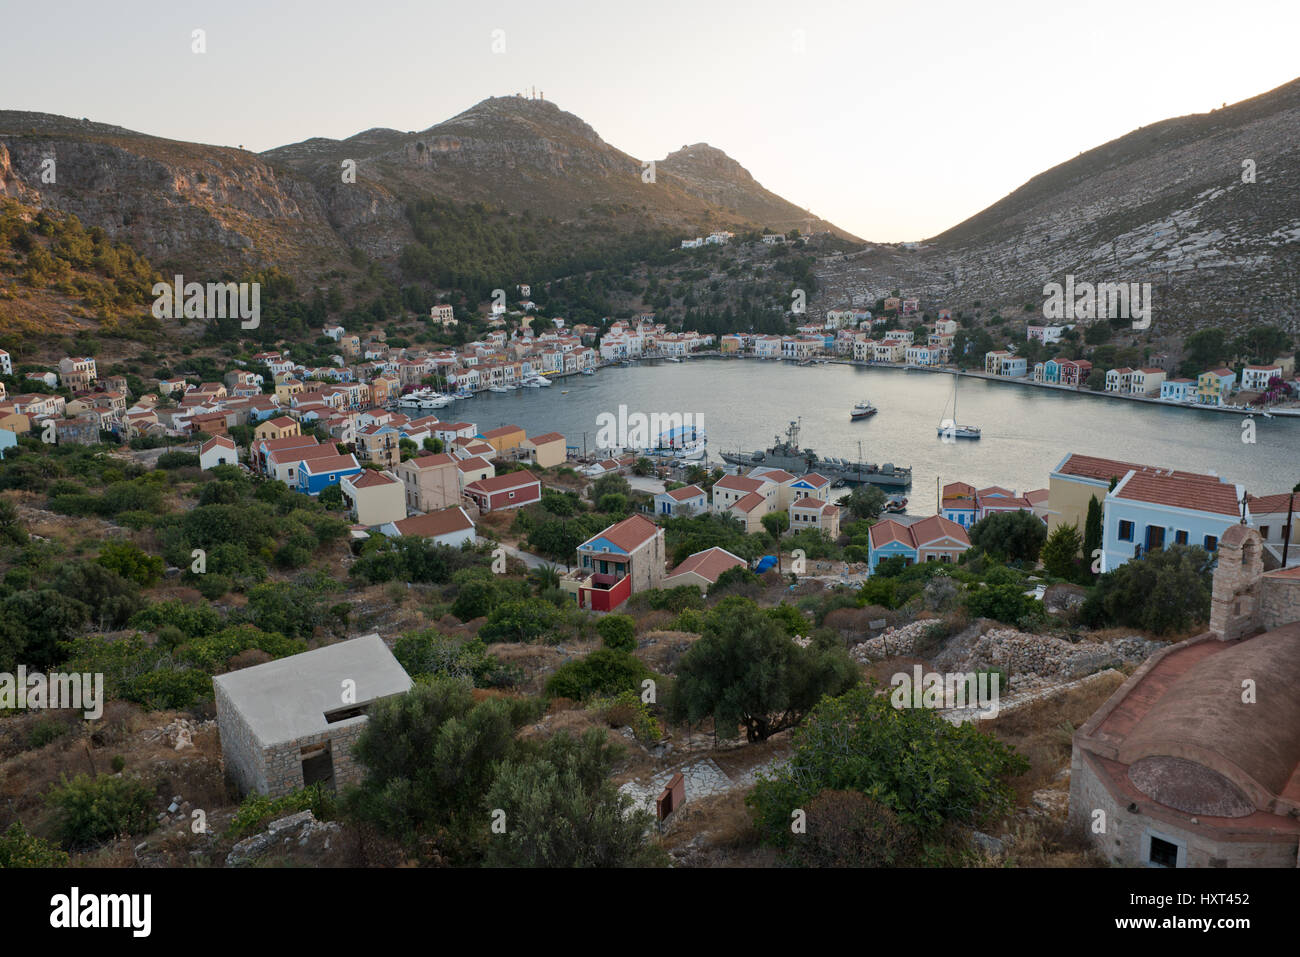 Östlicher Blick auf Hafen, Bucht mit bunten Häusern und kahlen Hügeln, Insel Kastellorizo, Dodekanes, Griechenland Foto Stock